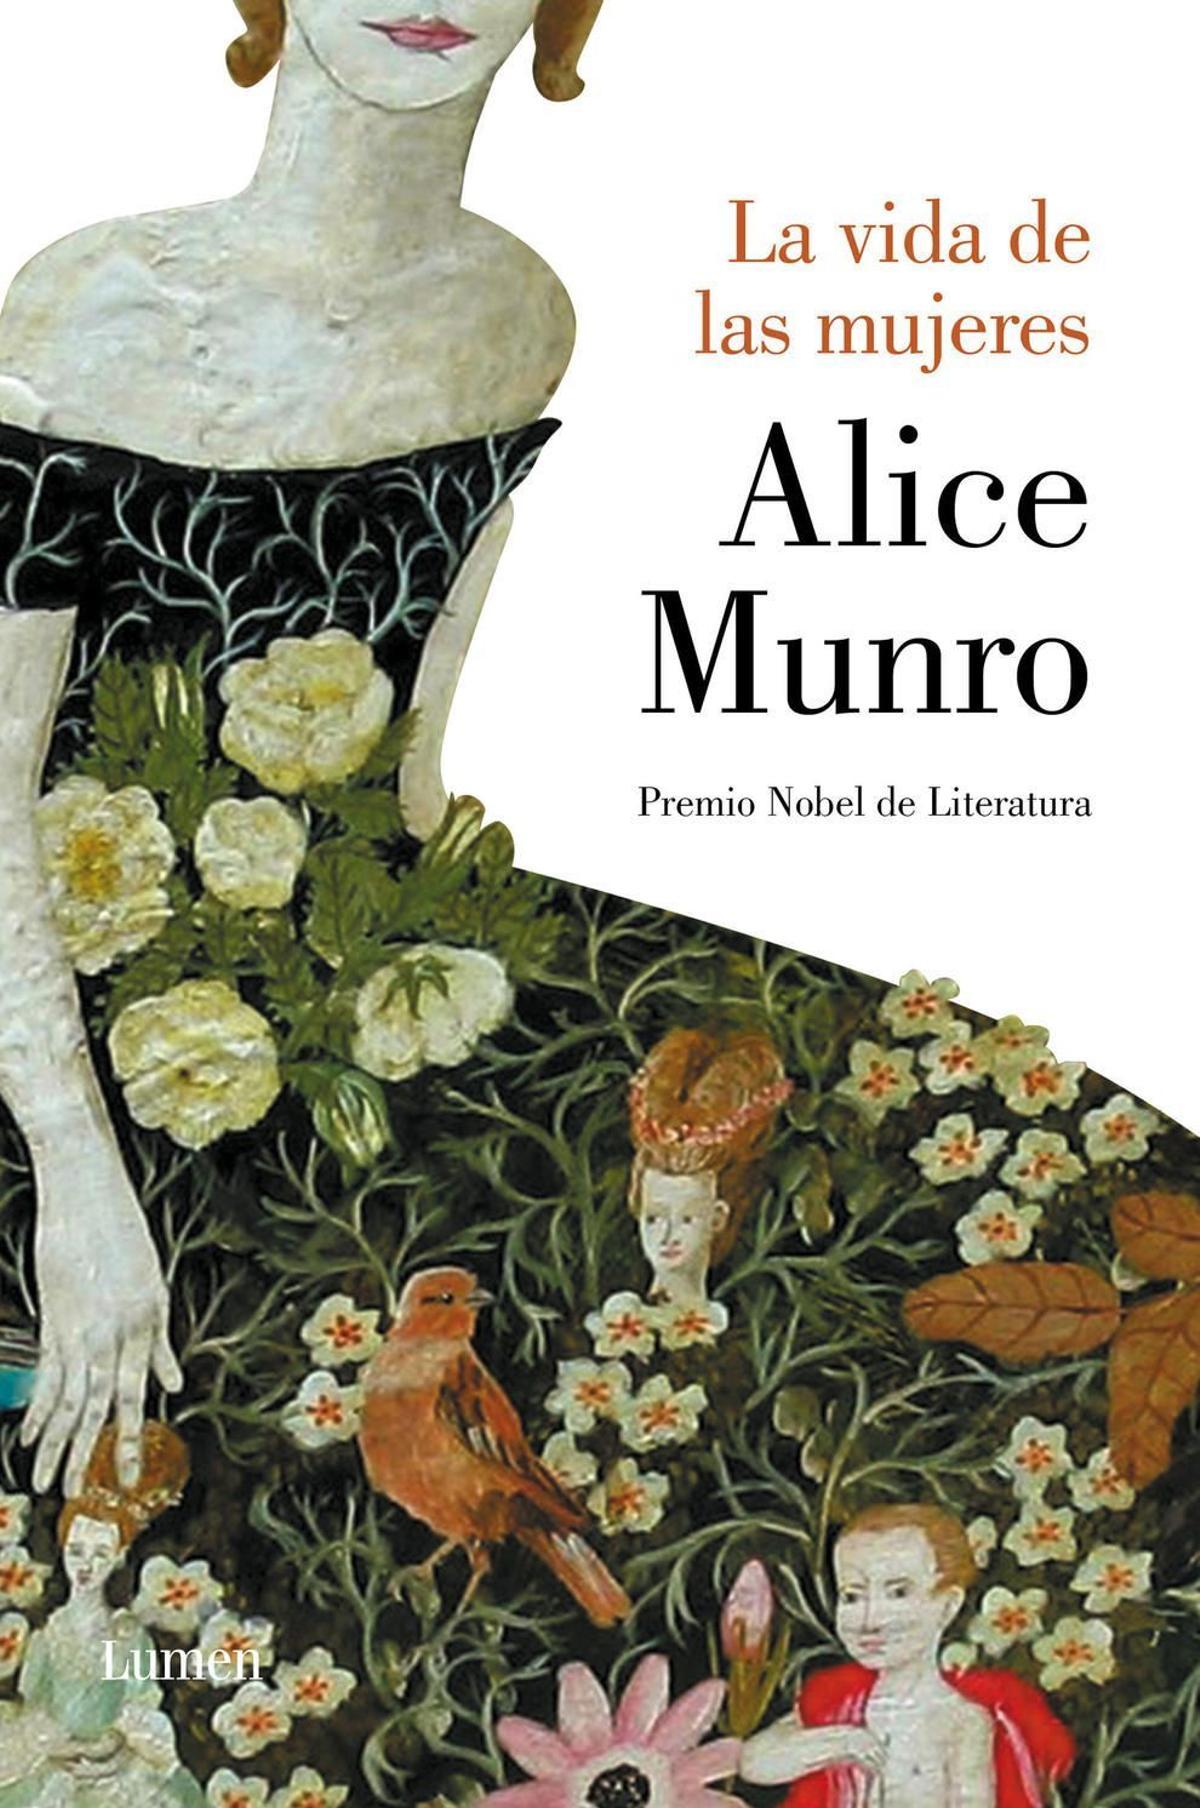 'La vida de las mujeres', por Alice Munro.